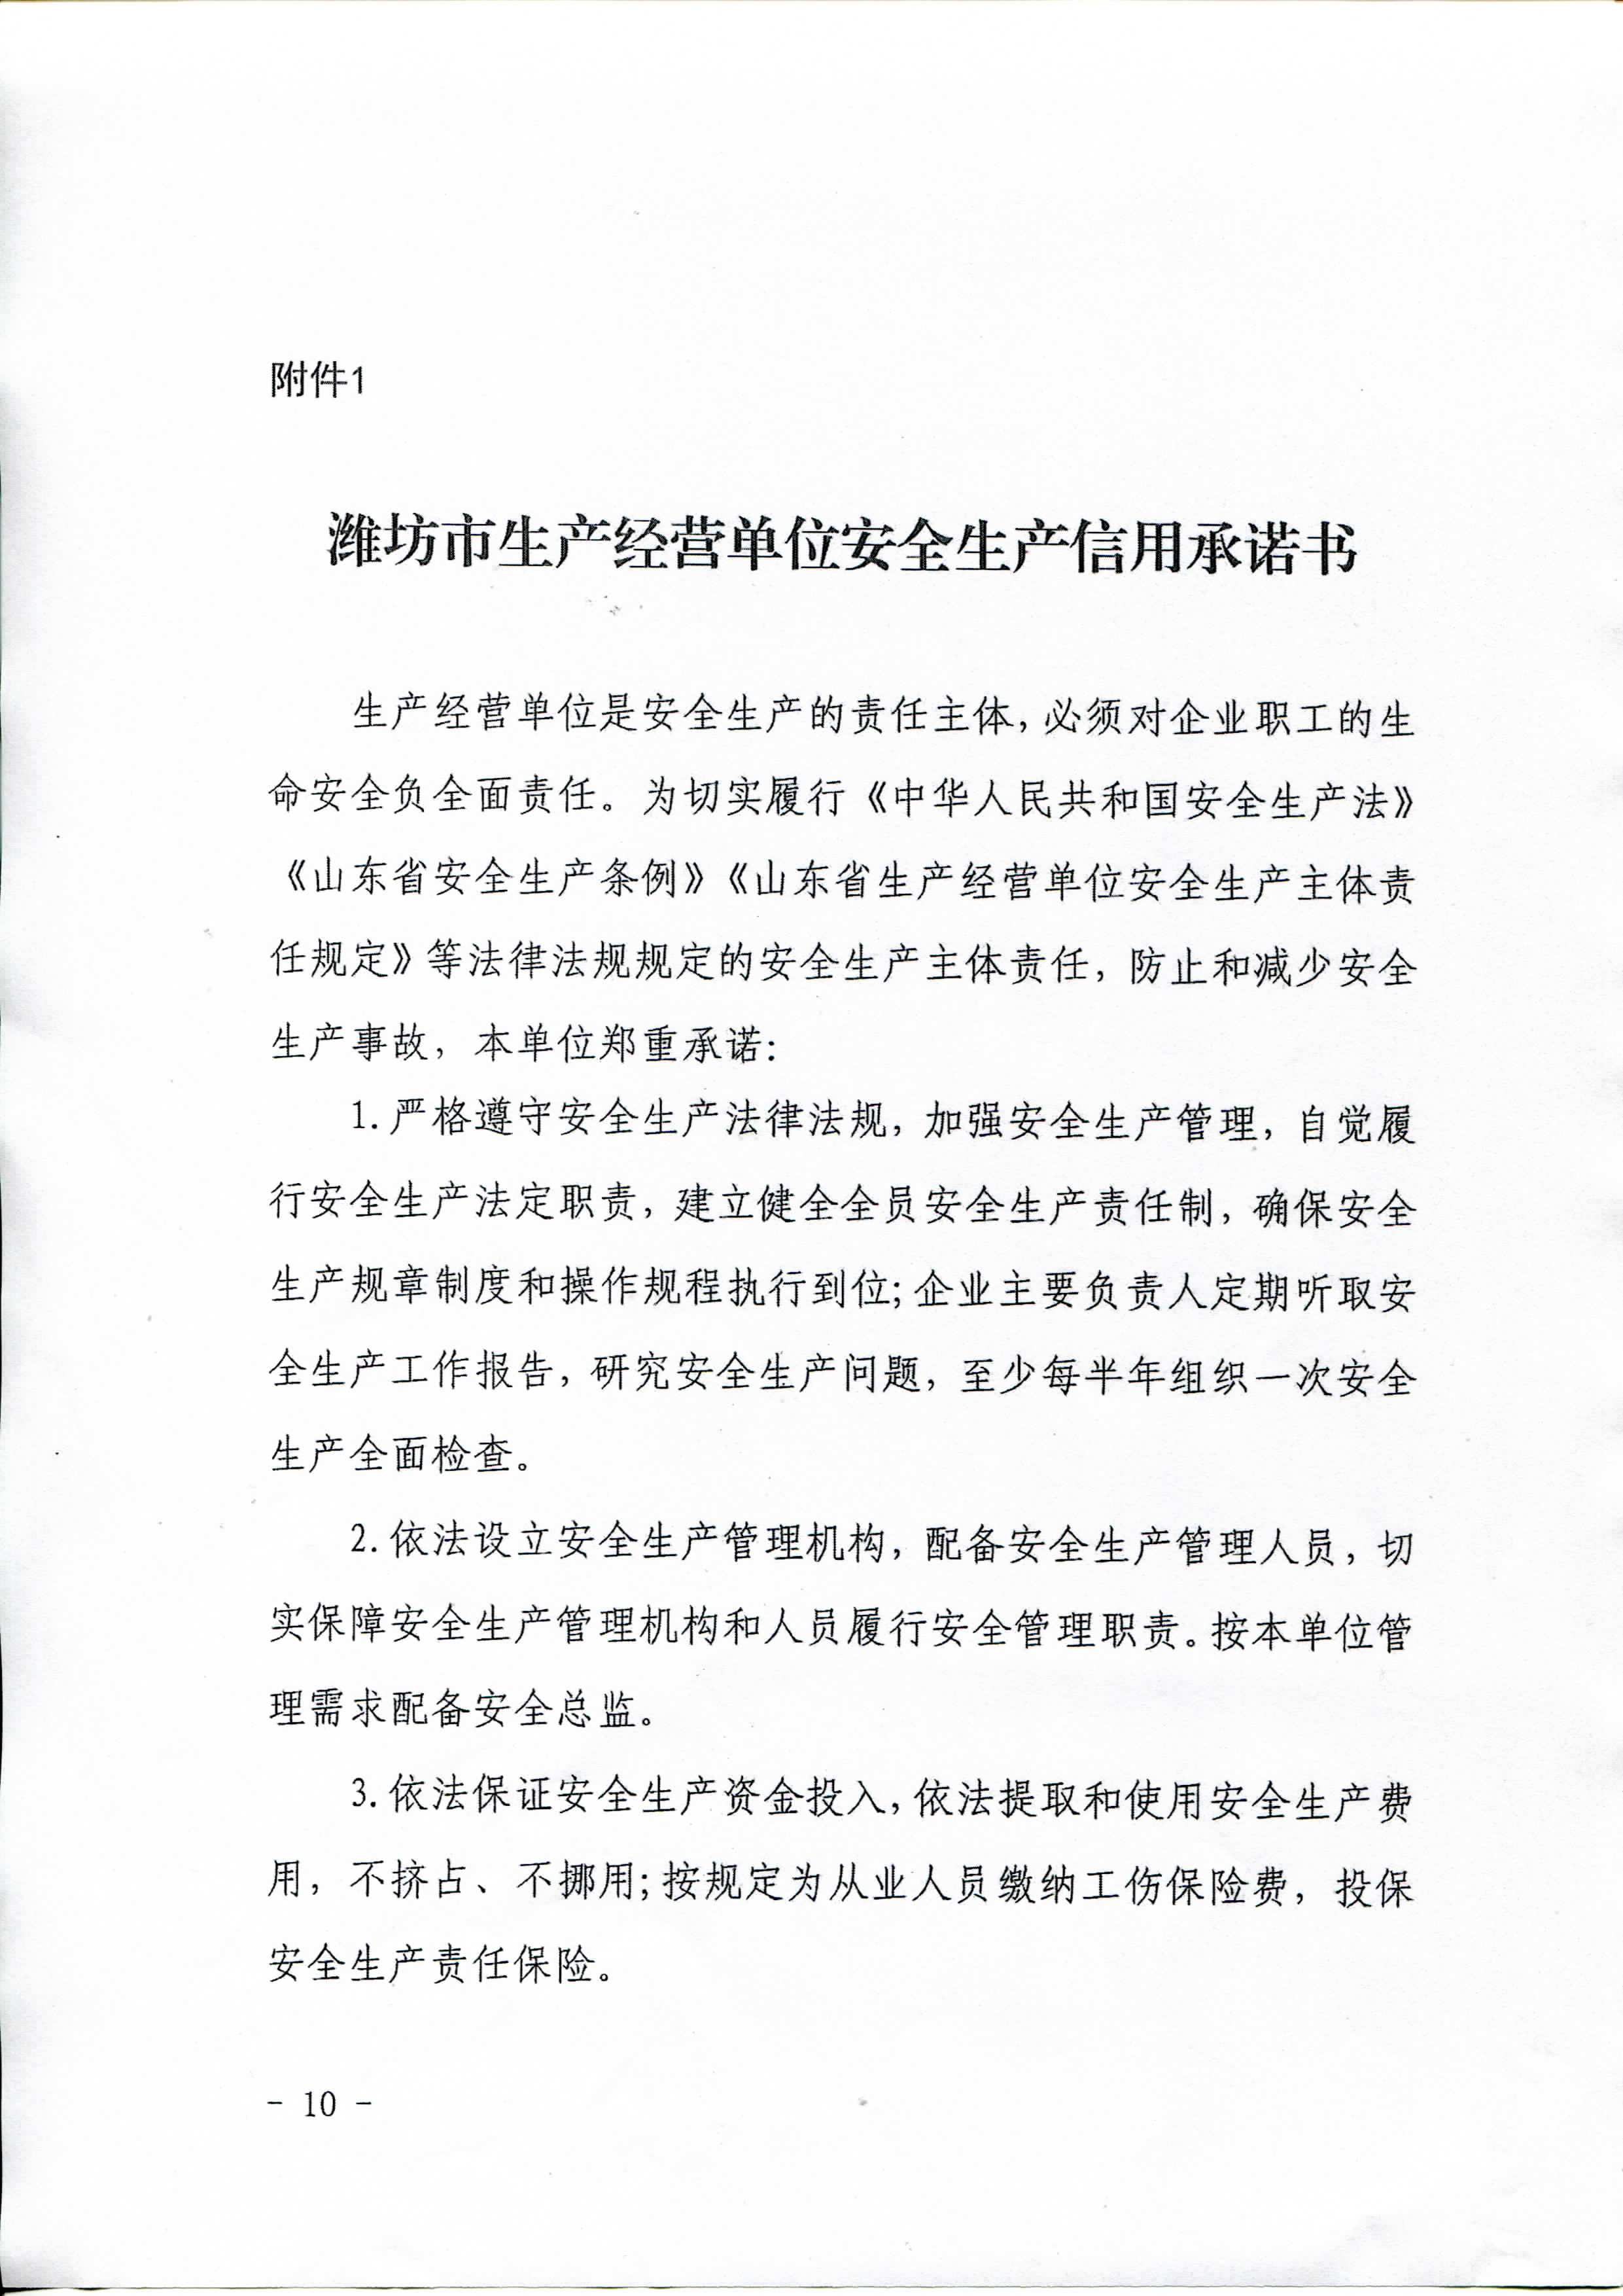 潍坊市生产经营单位安全生产信用承诺书